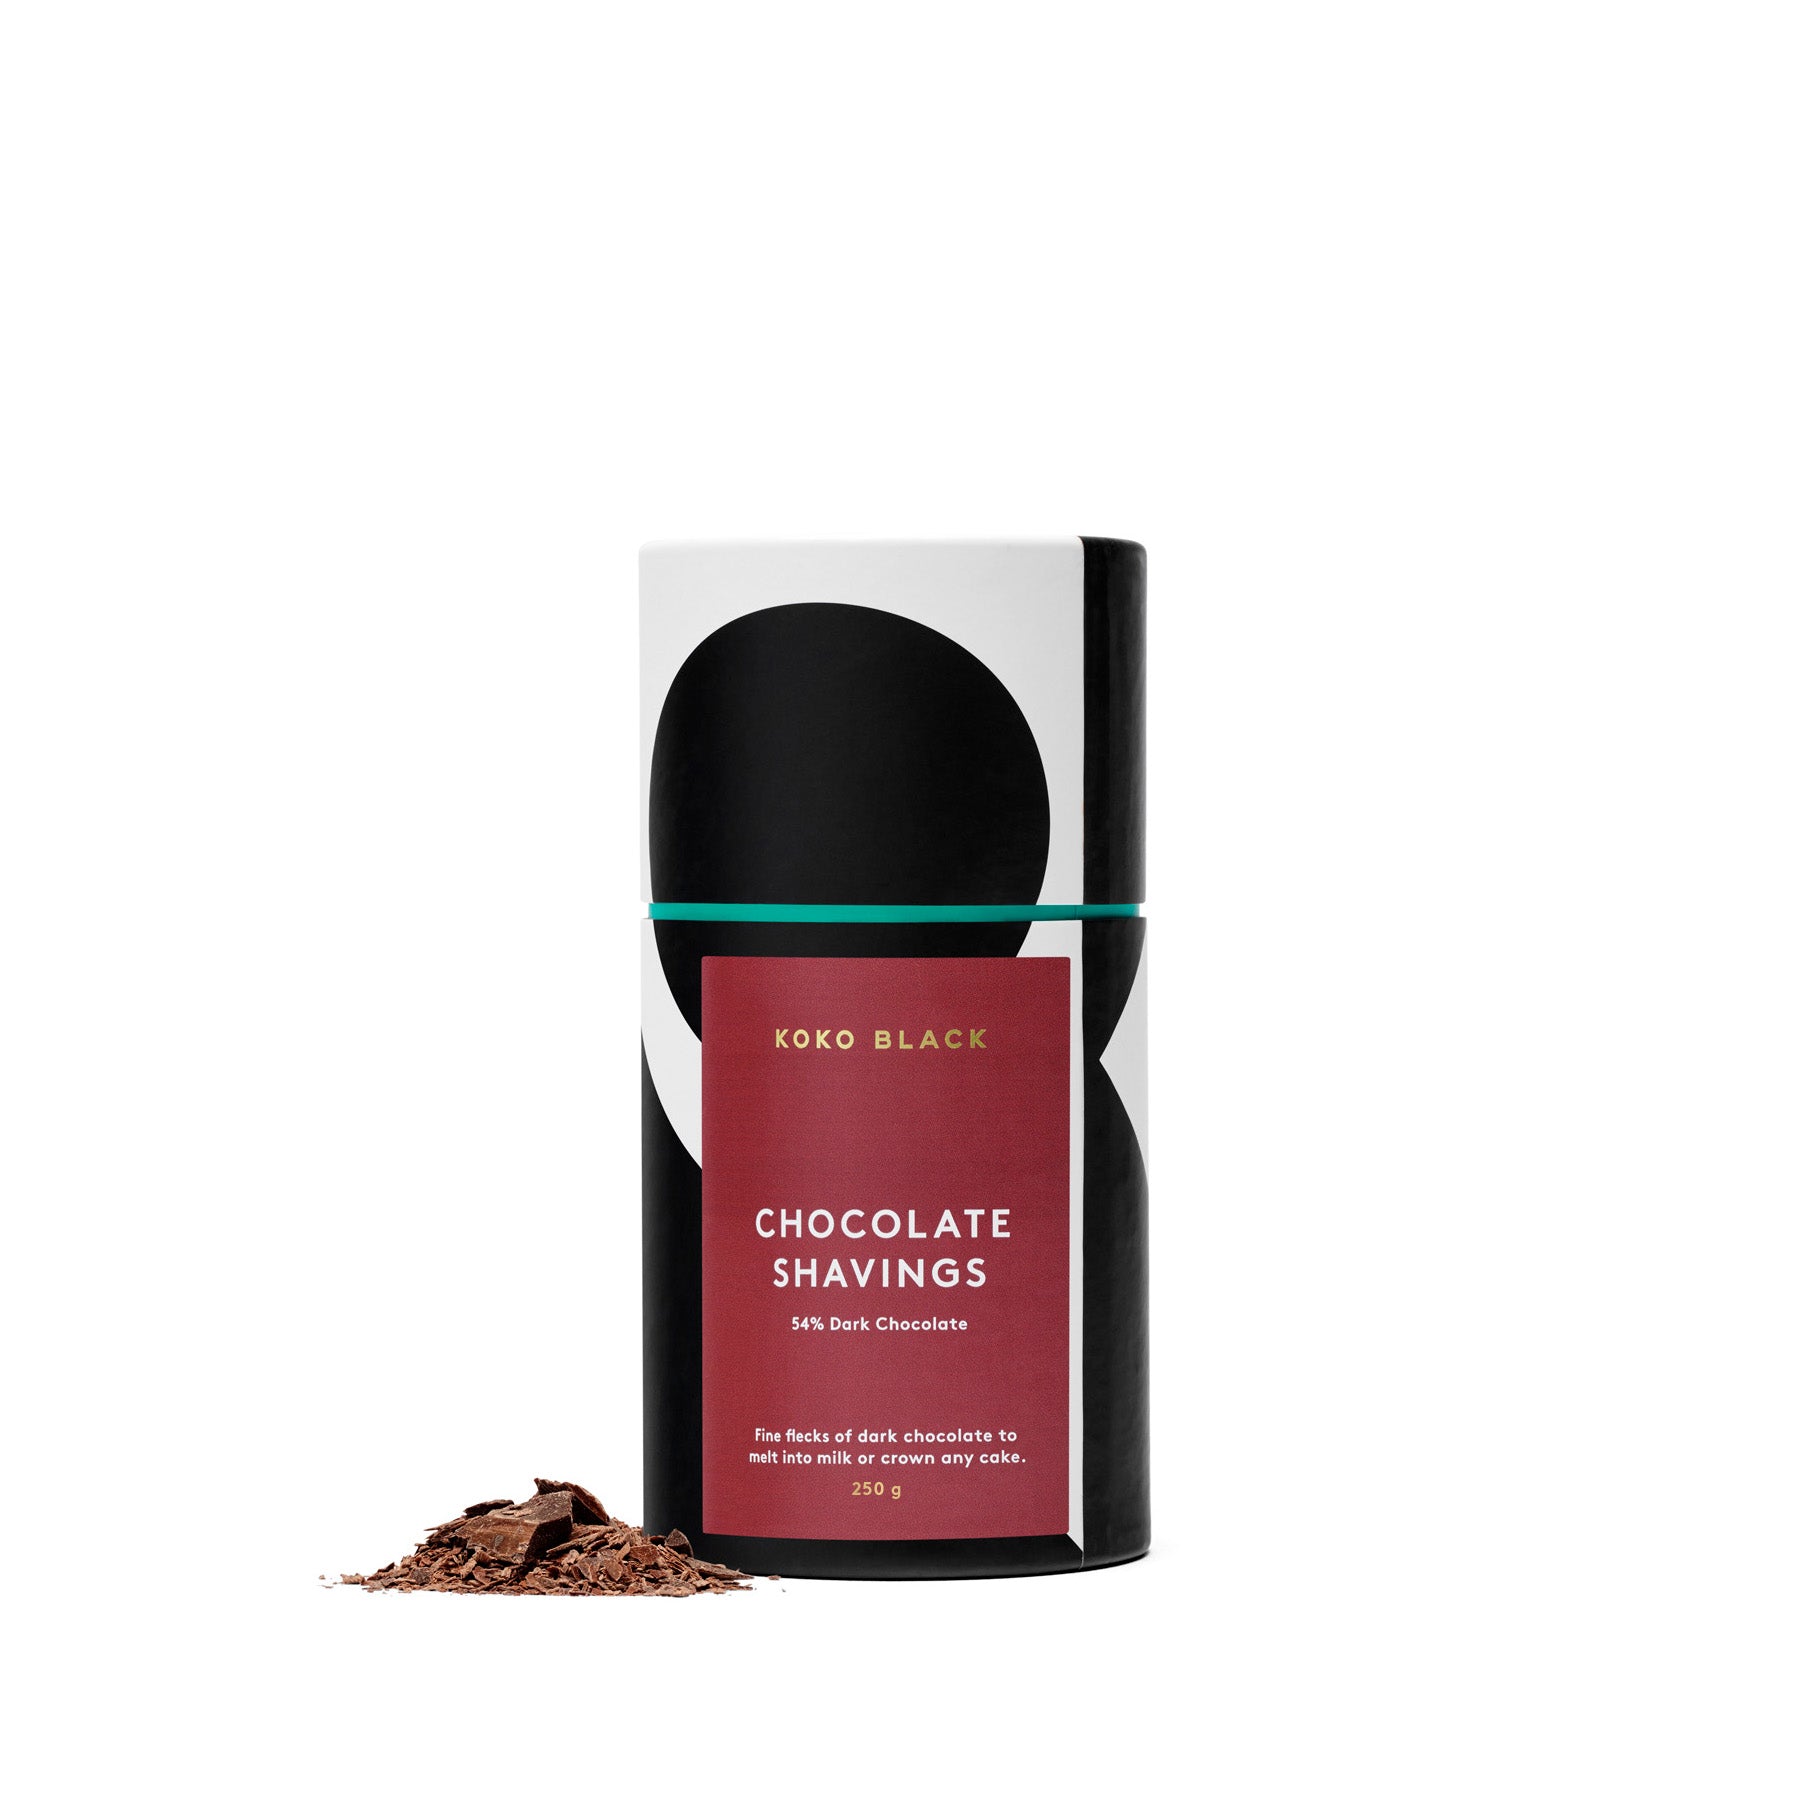 Shavings 250g | 54% Dark Chocolate